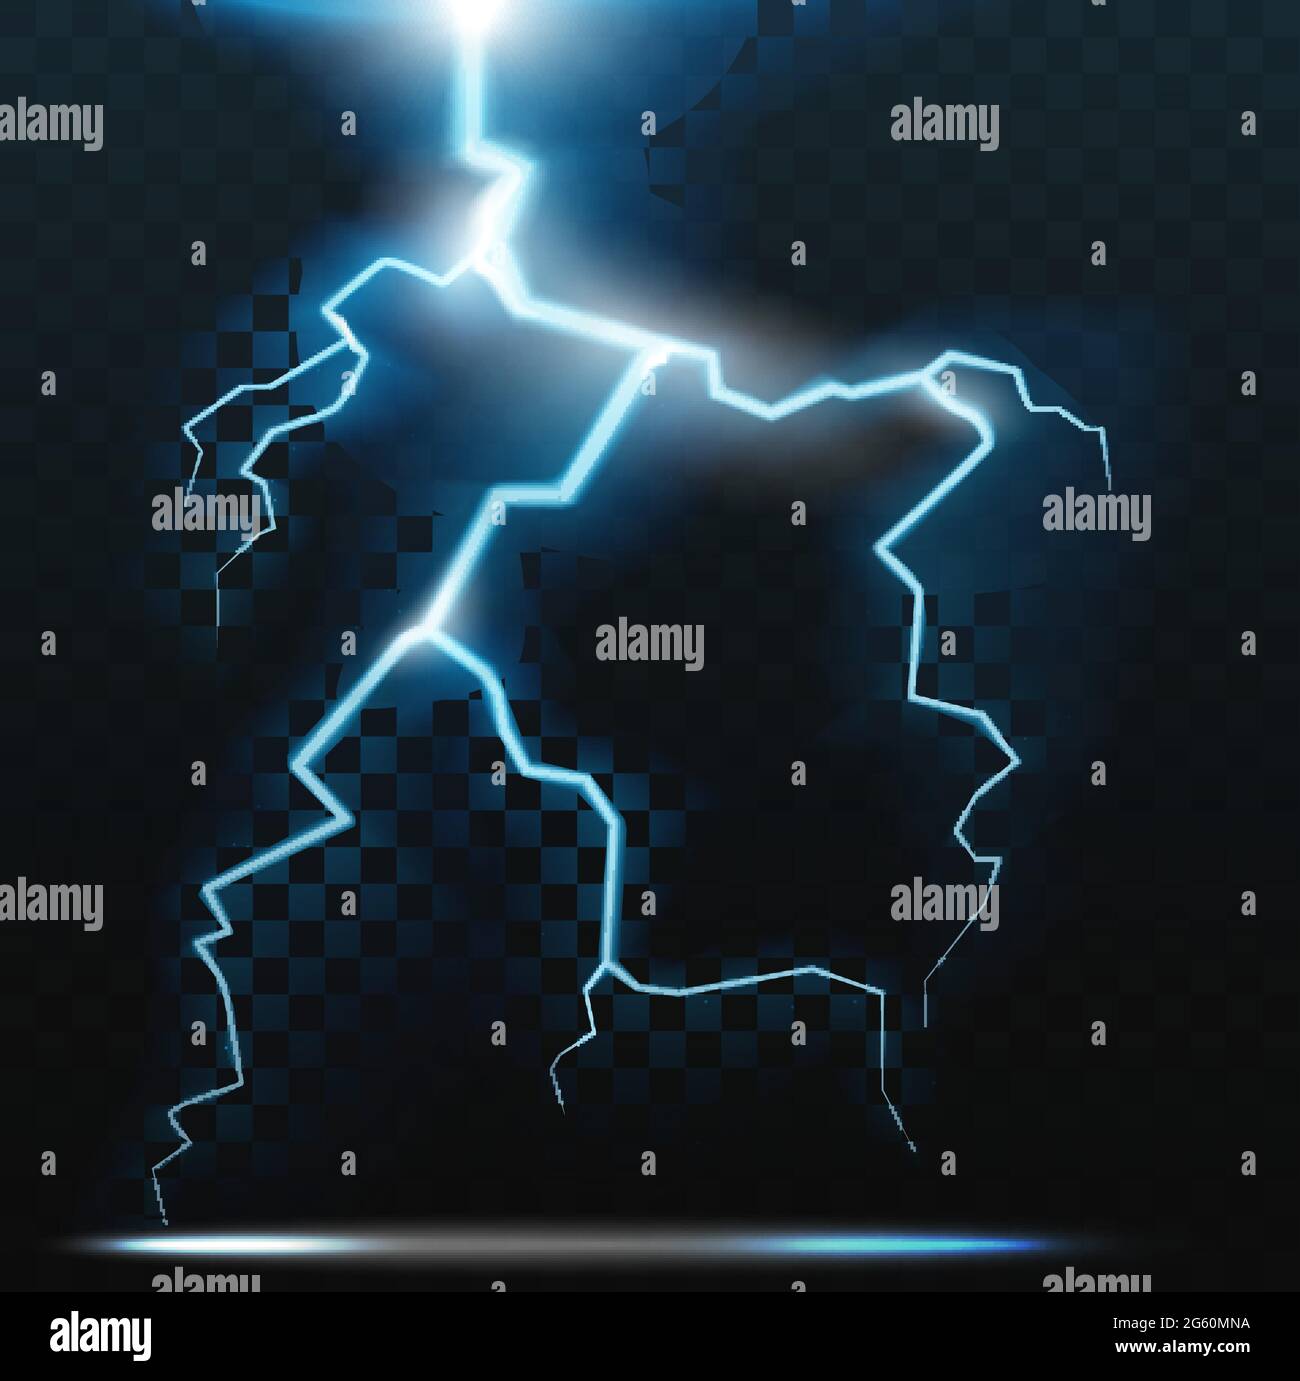 Thunder Bolt fulmine, realistico tuono elettricità flash vettore illustrazione. Blu elettrico luminoso effetto luminoso pericolo luce, astratti raggi di scossa al neon di notte tempestoso cielo scuro sfondo Illustrazione Vettoriale